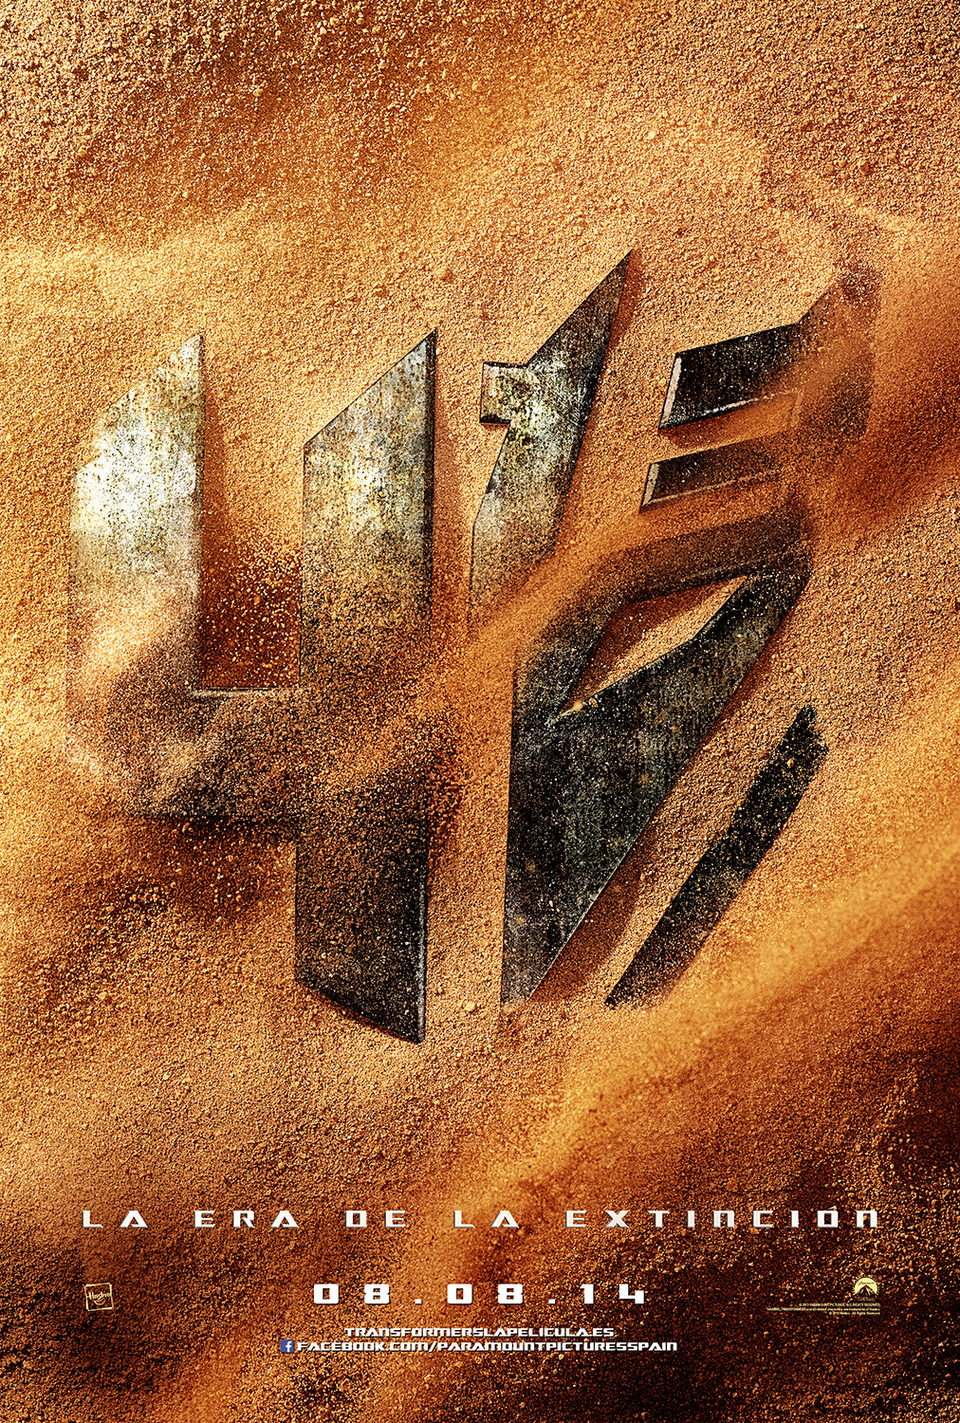 Cartel de Transformers: La era de la extinción - Teaser España